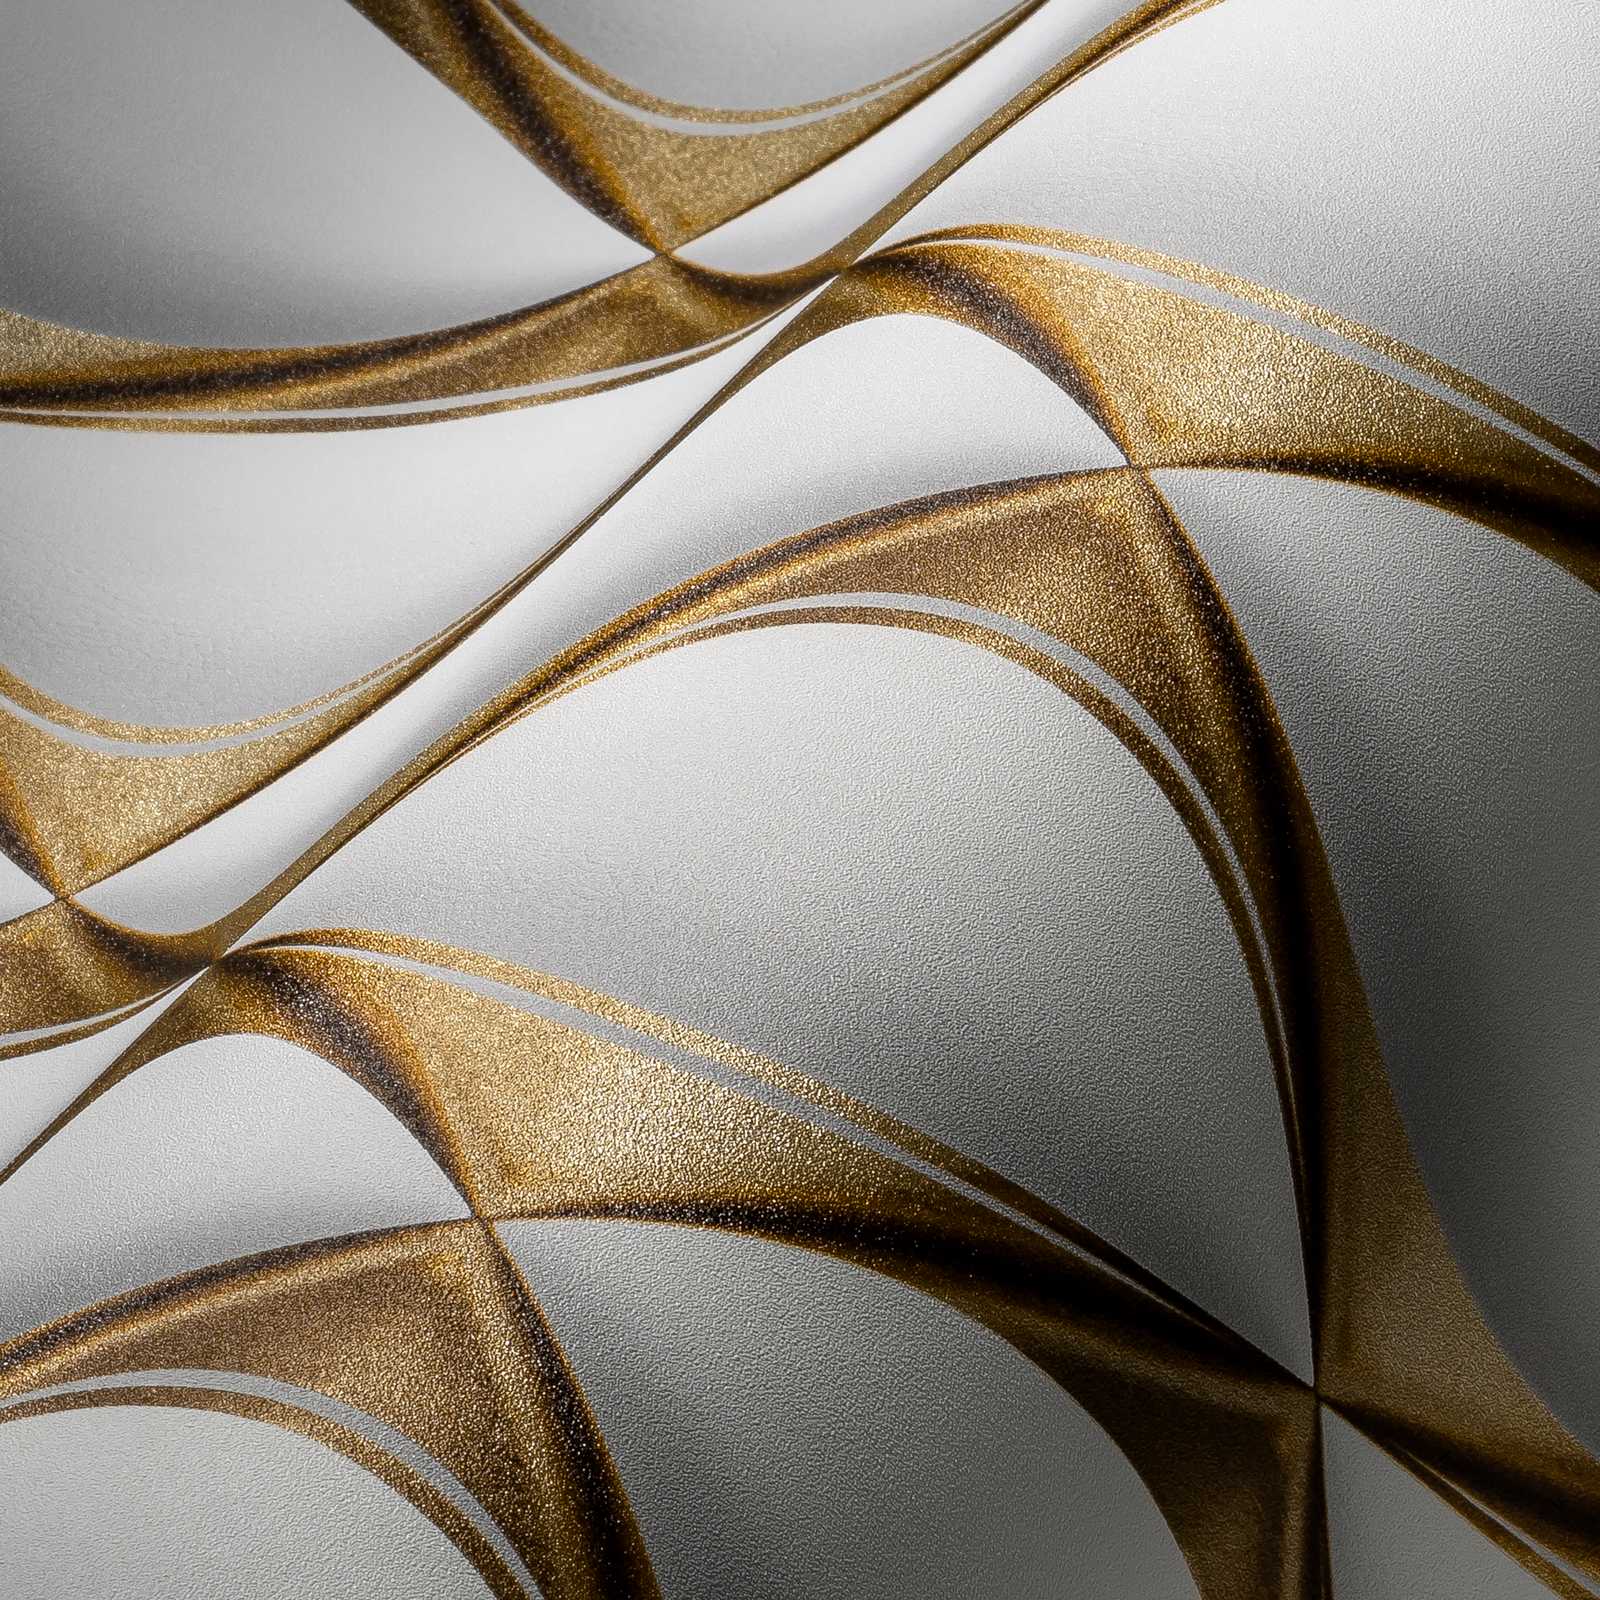             Papier peint 3D motif rétro doré - blanc, gris, métallique
        